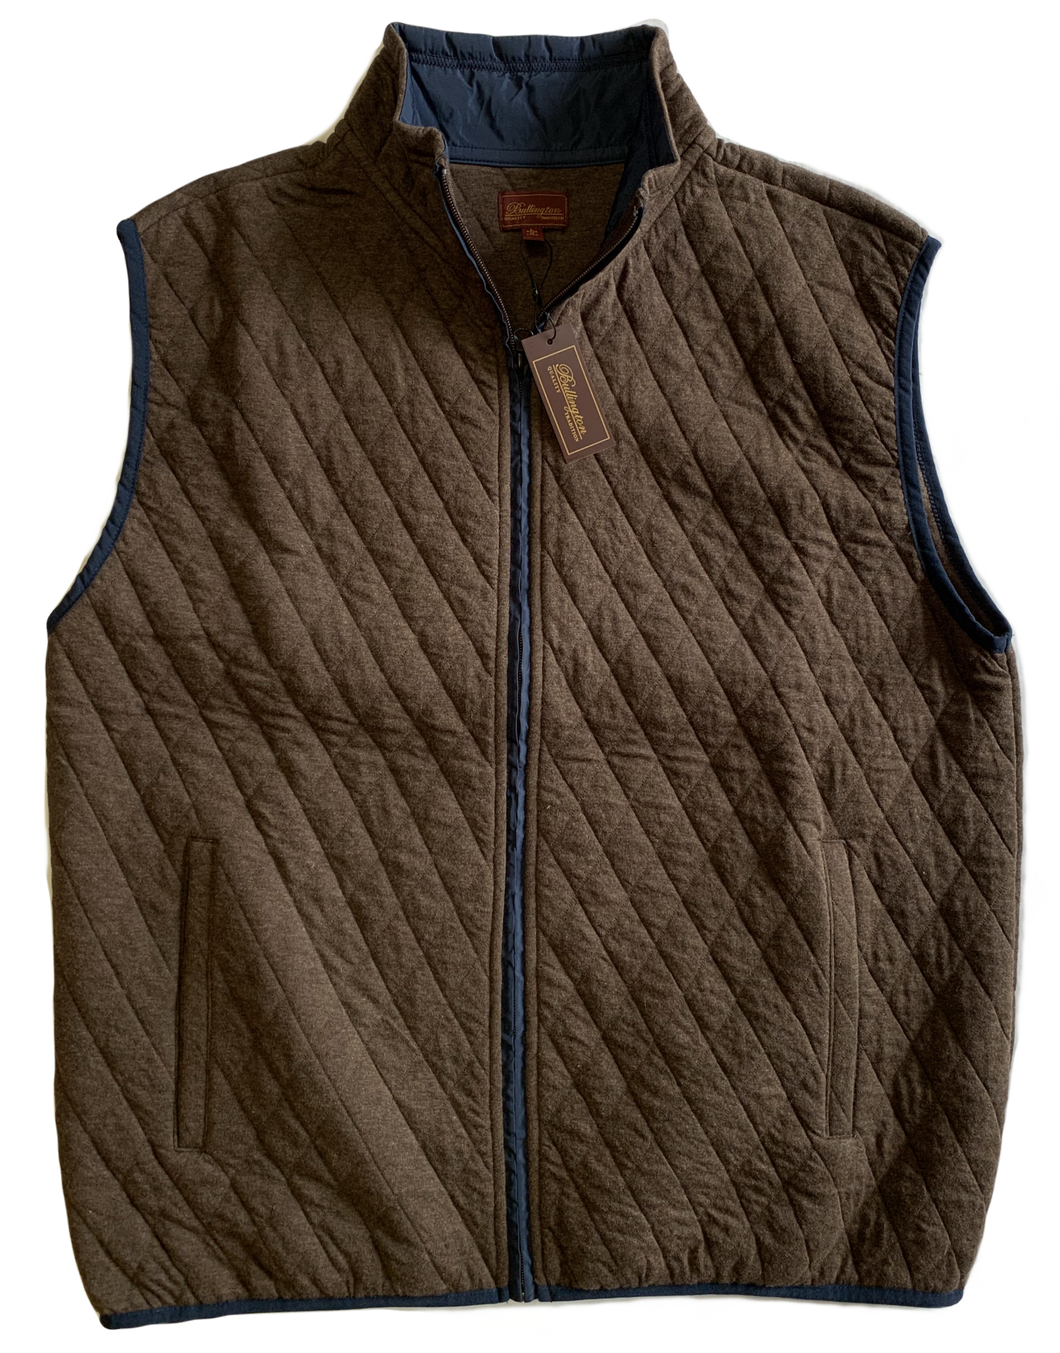 Brown Quilted Zip Mock Vest